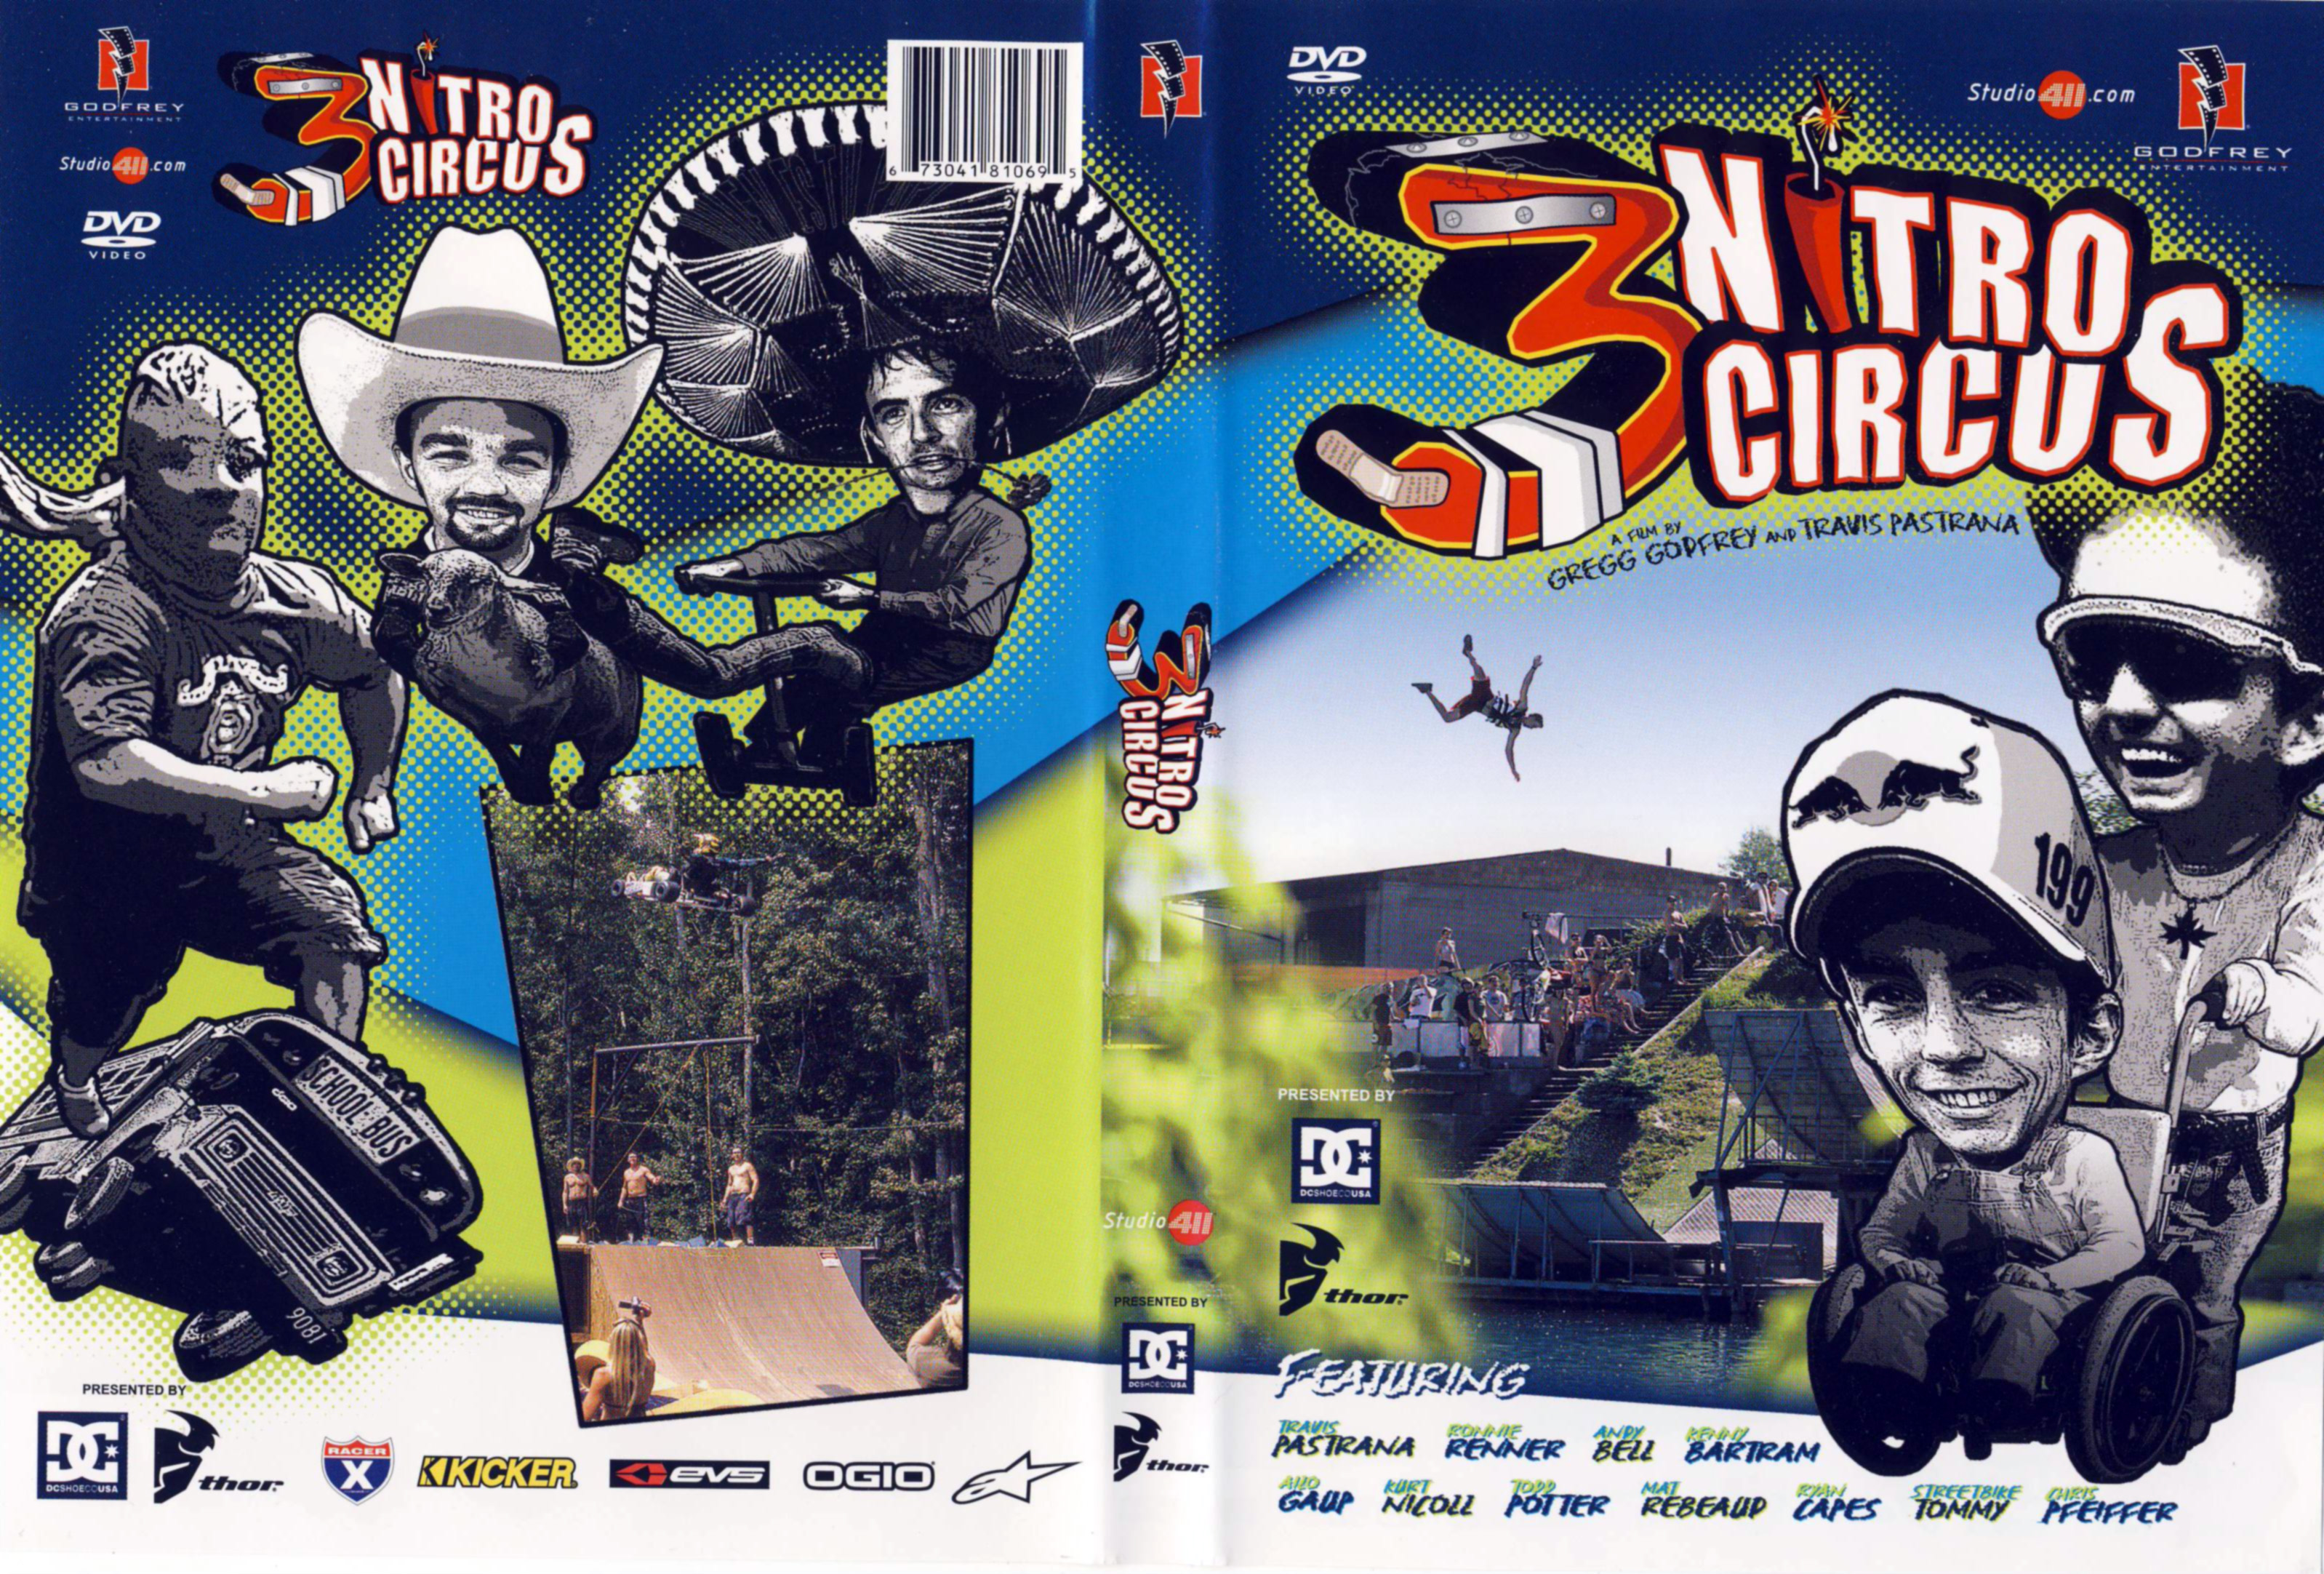 Jaquette DVD Nitro circus 3